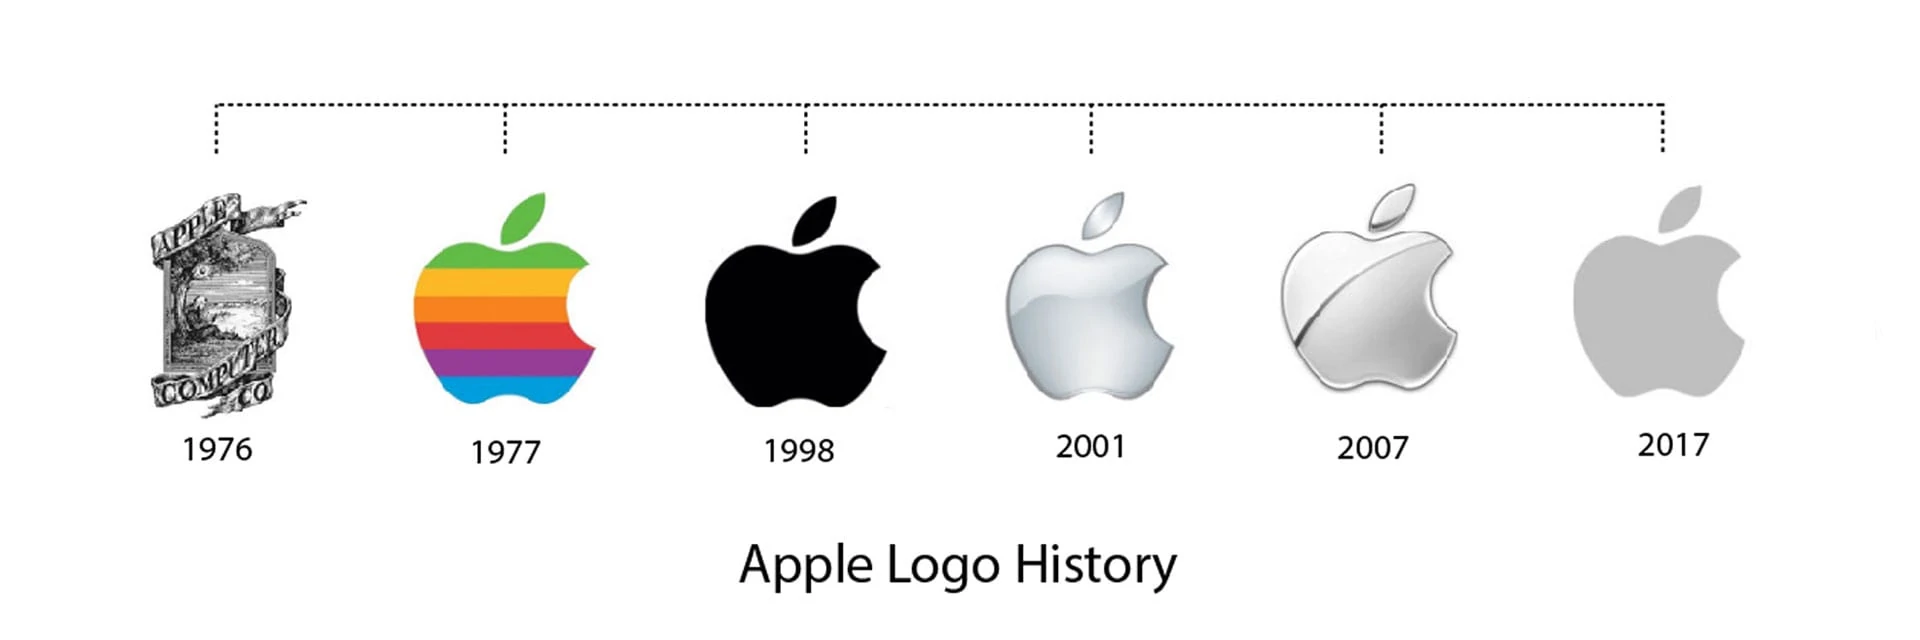 داستان سیب گاز گرفته شده لوگوی اپل